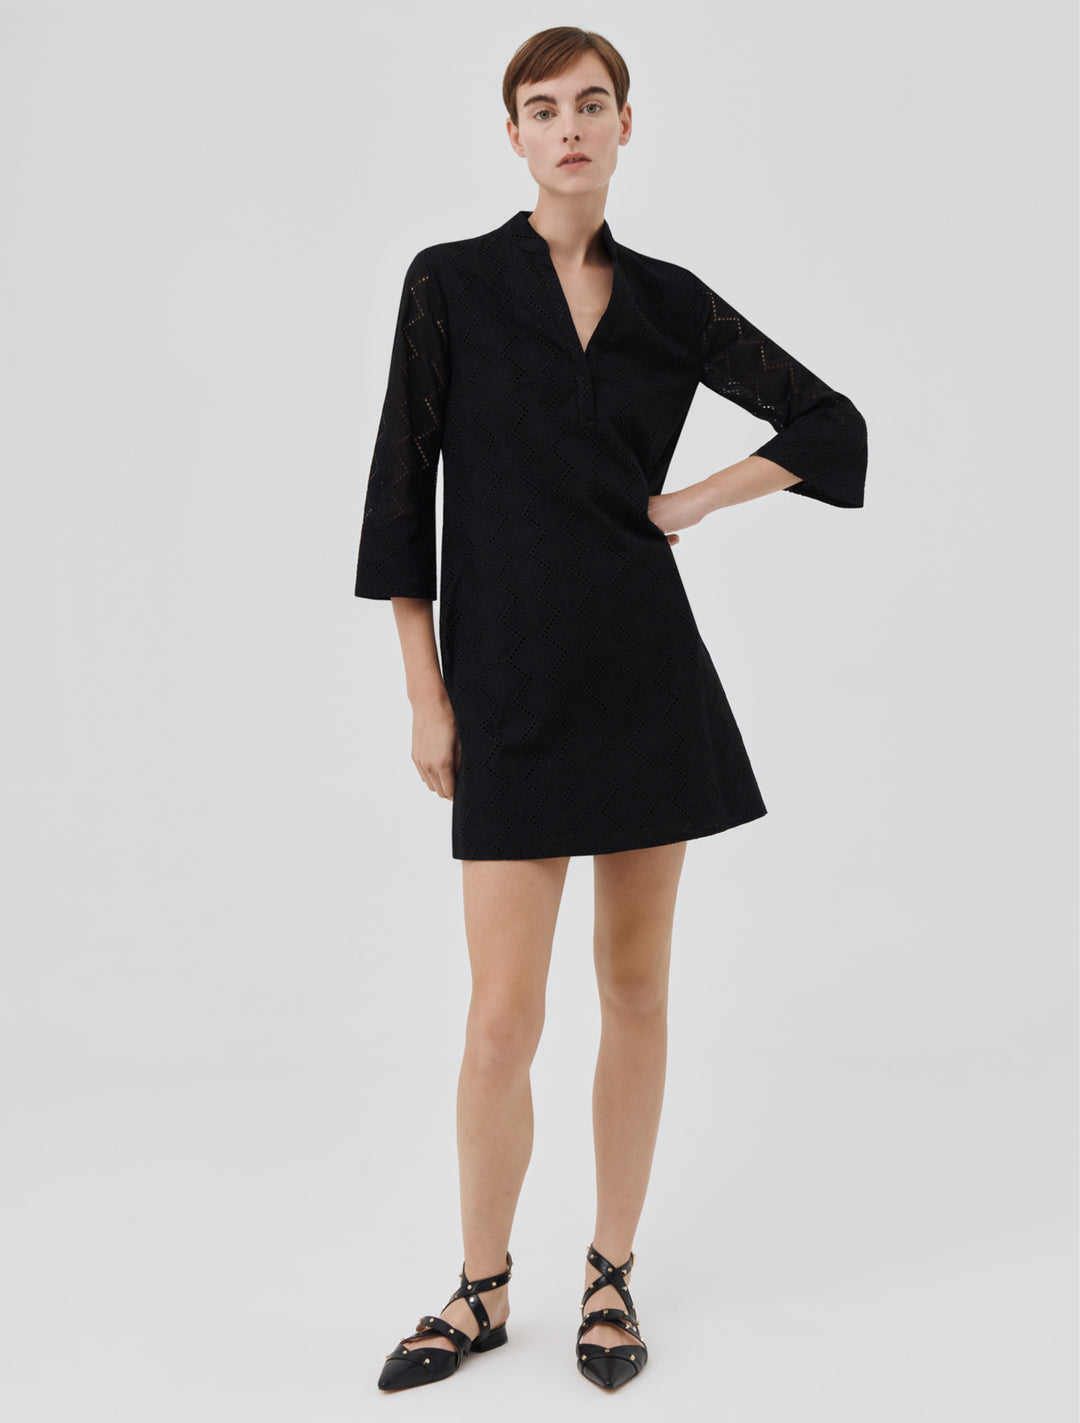 Marella Lester 32210924200 Black Split Neck Dress - Olivia Grace Fashion